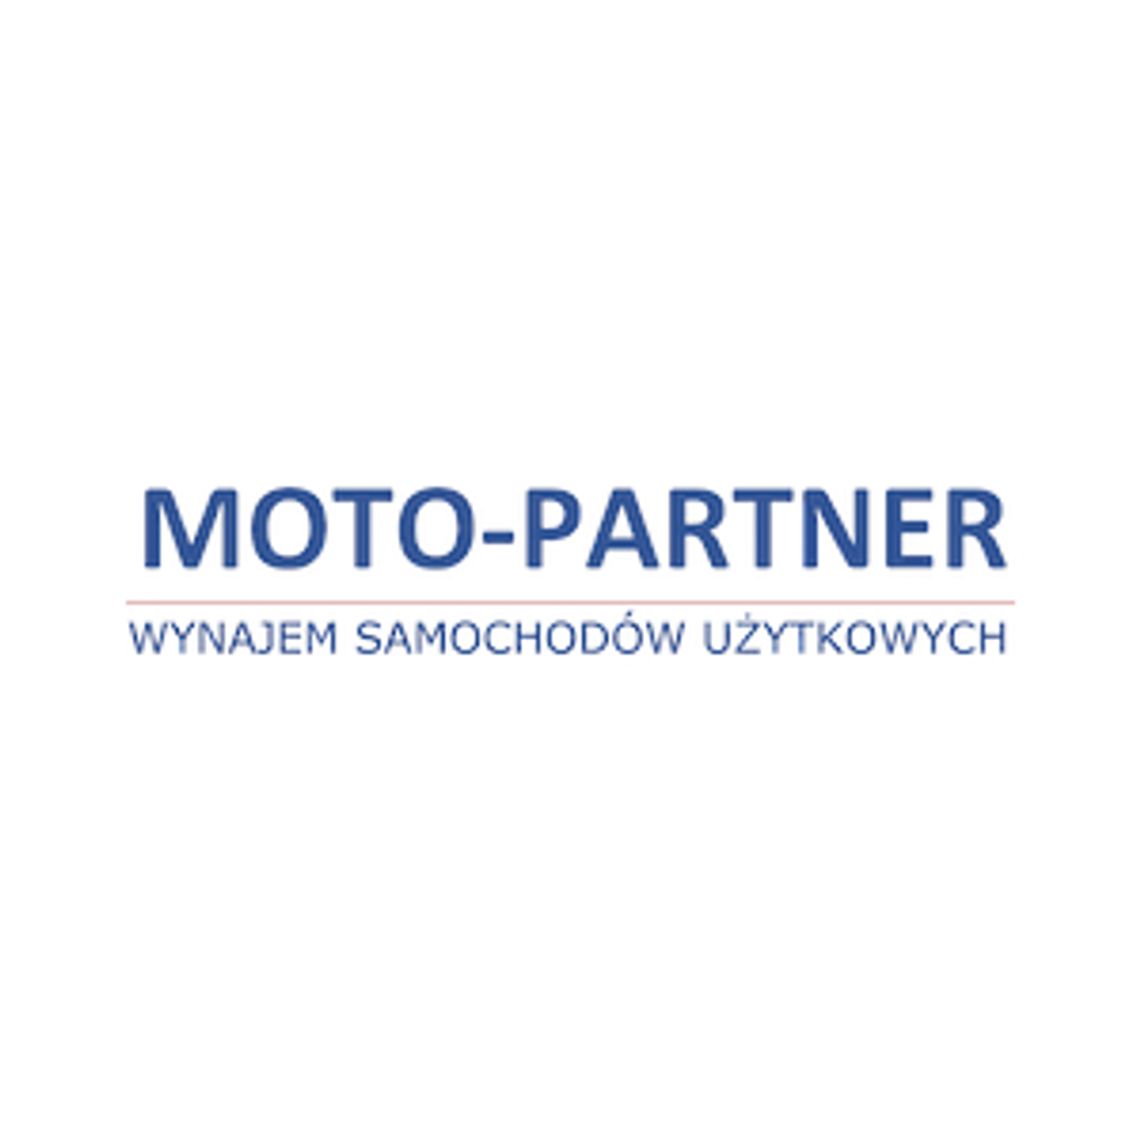 Wynajem samochodów osobowych - Moto-Partner